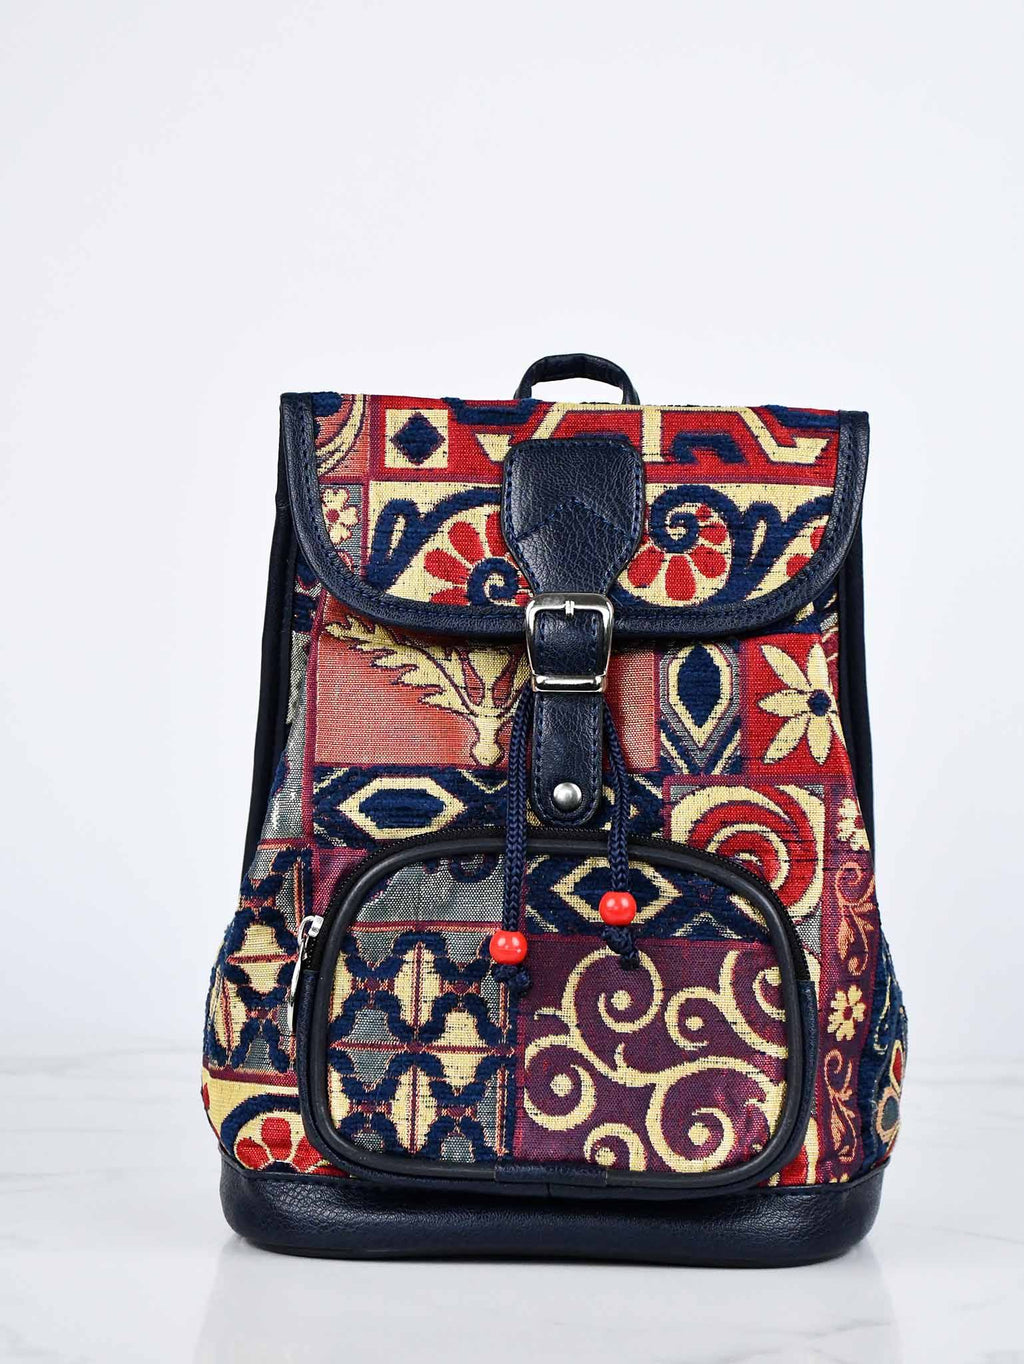 Turkish Handbag Backpack Patchwork Design Blue Red Textile Sydney Grand Bazaar 